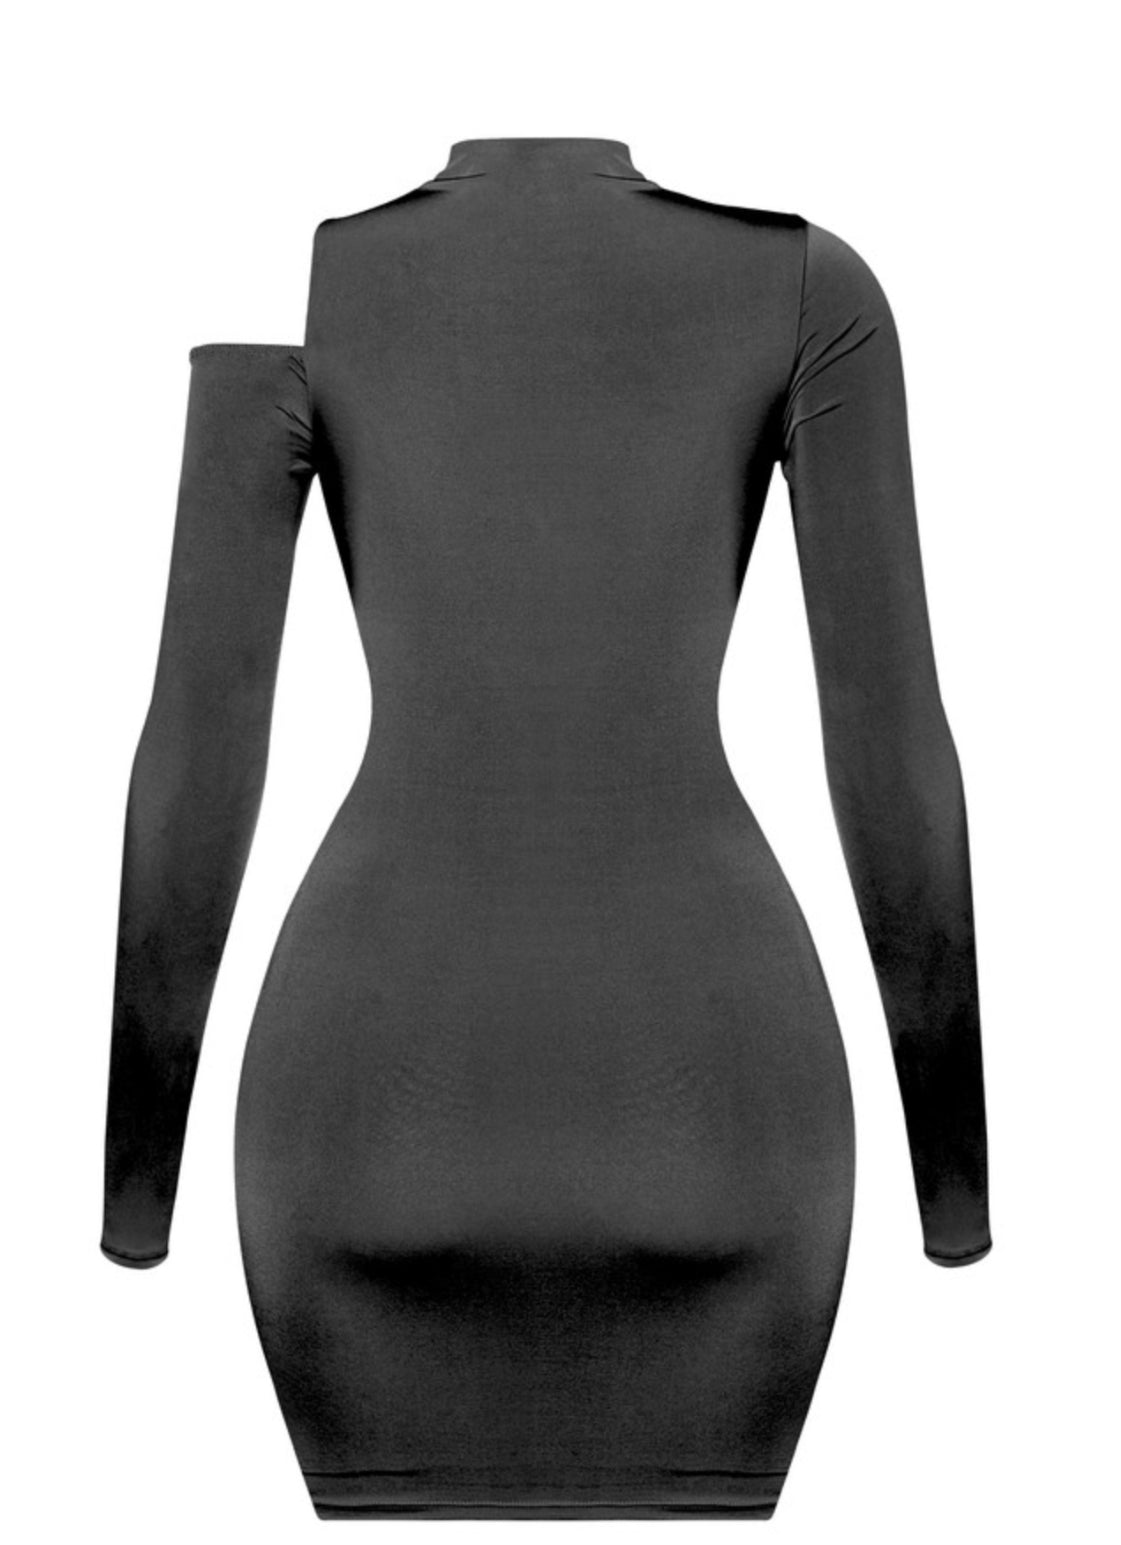 Kaly Mini Dress - Black